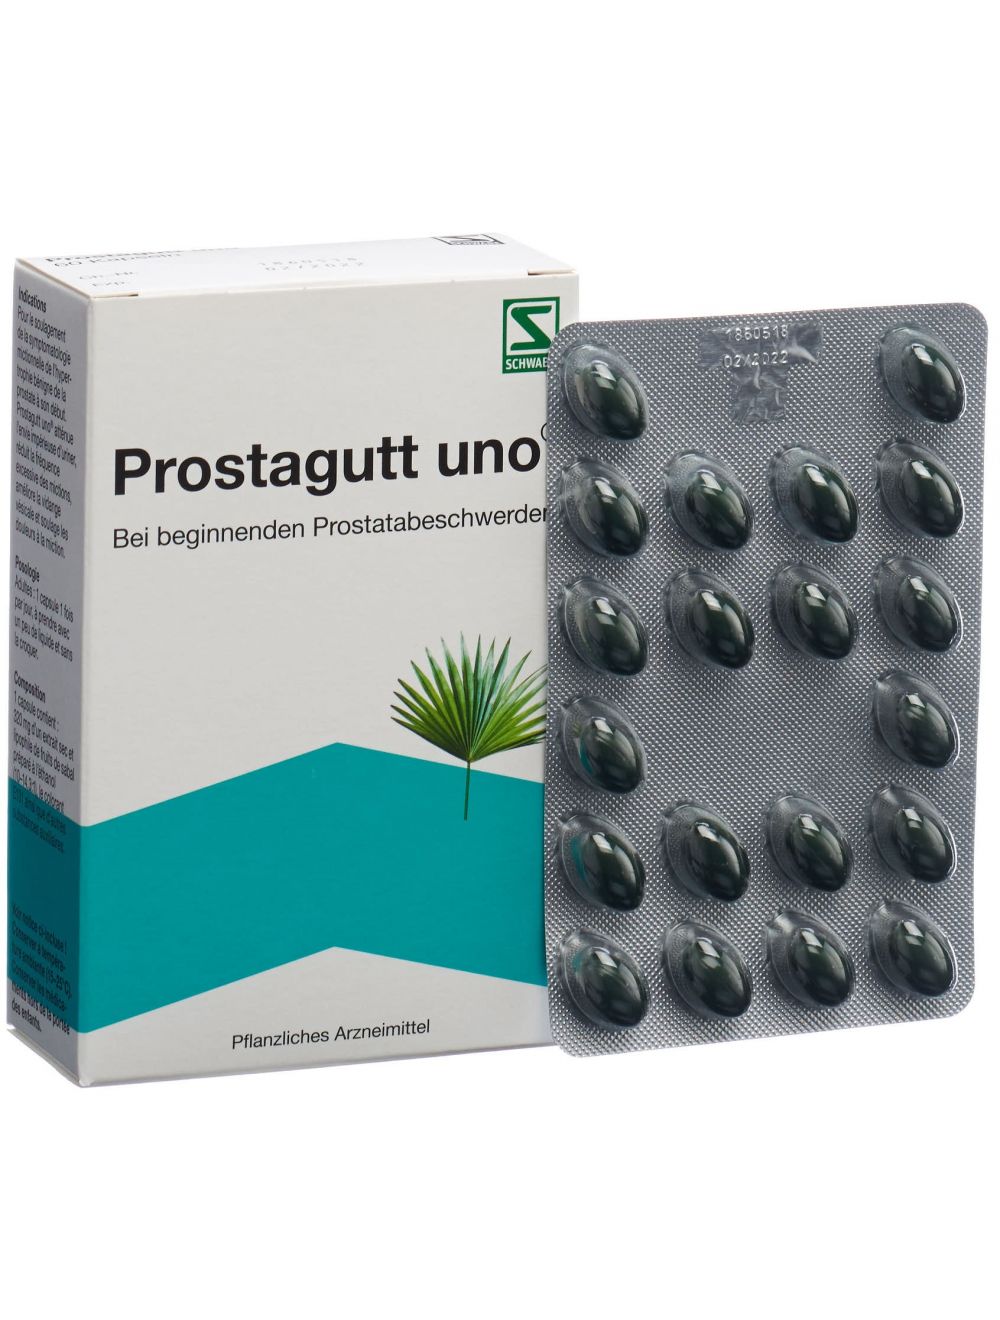 médicament prostate sans ordonnance